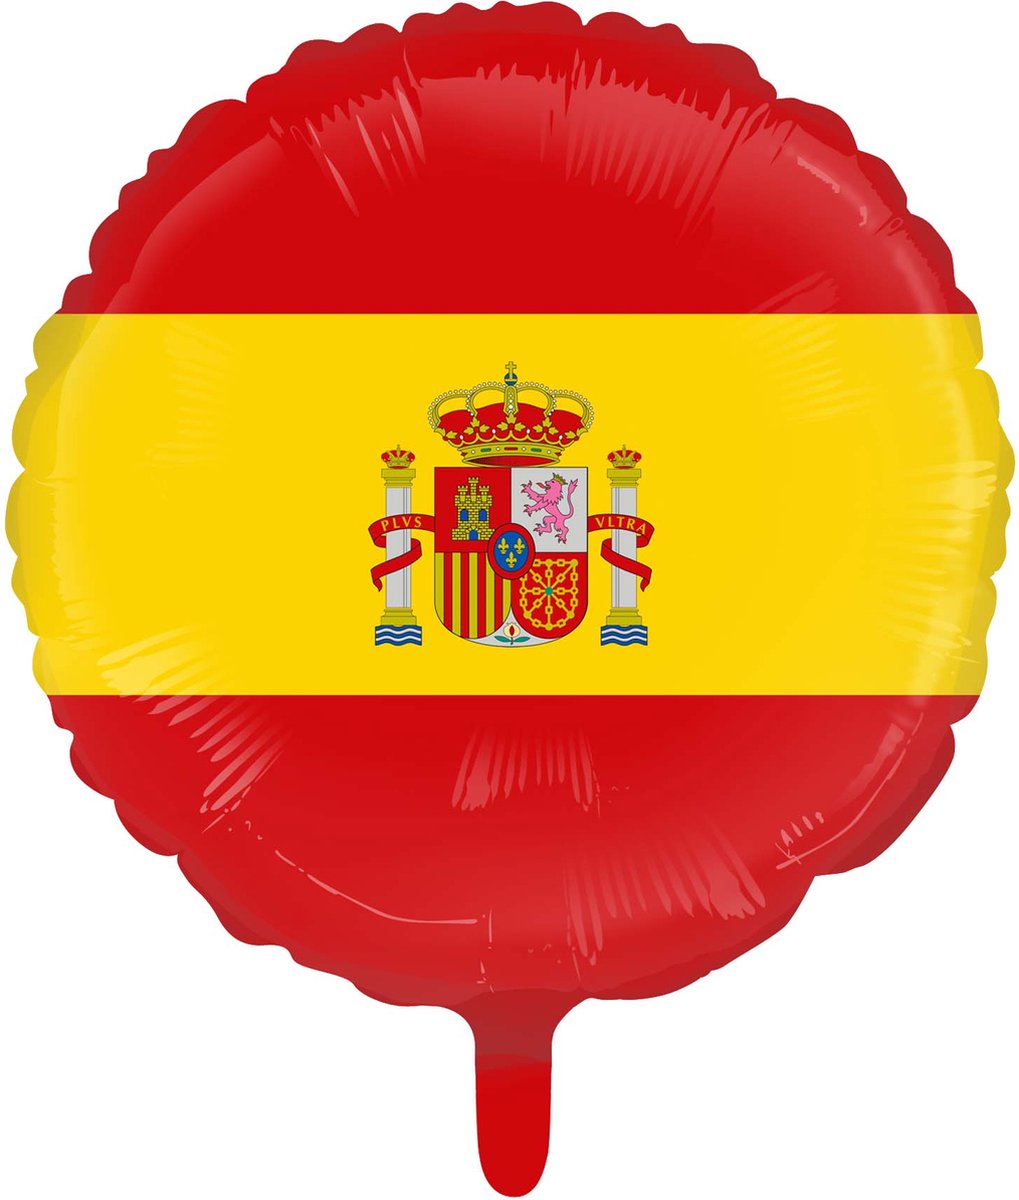 Folieballon Spanje 18